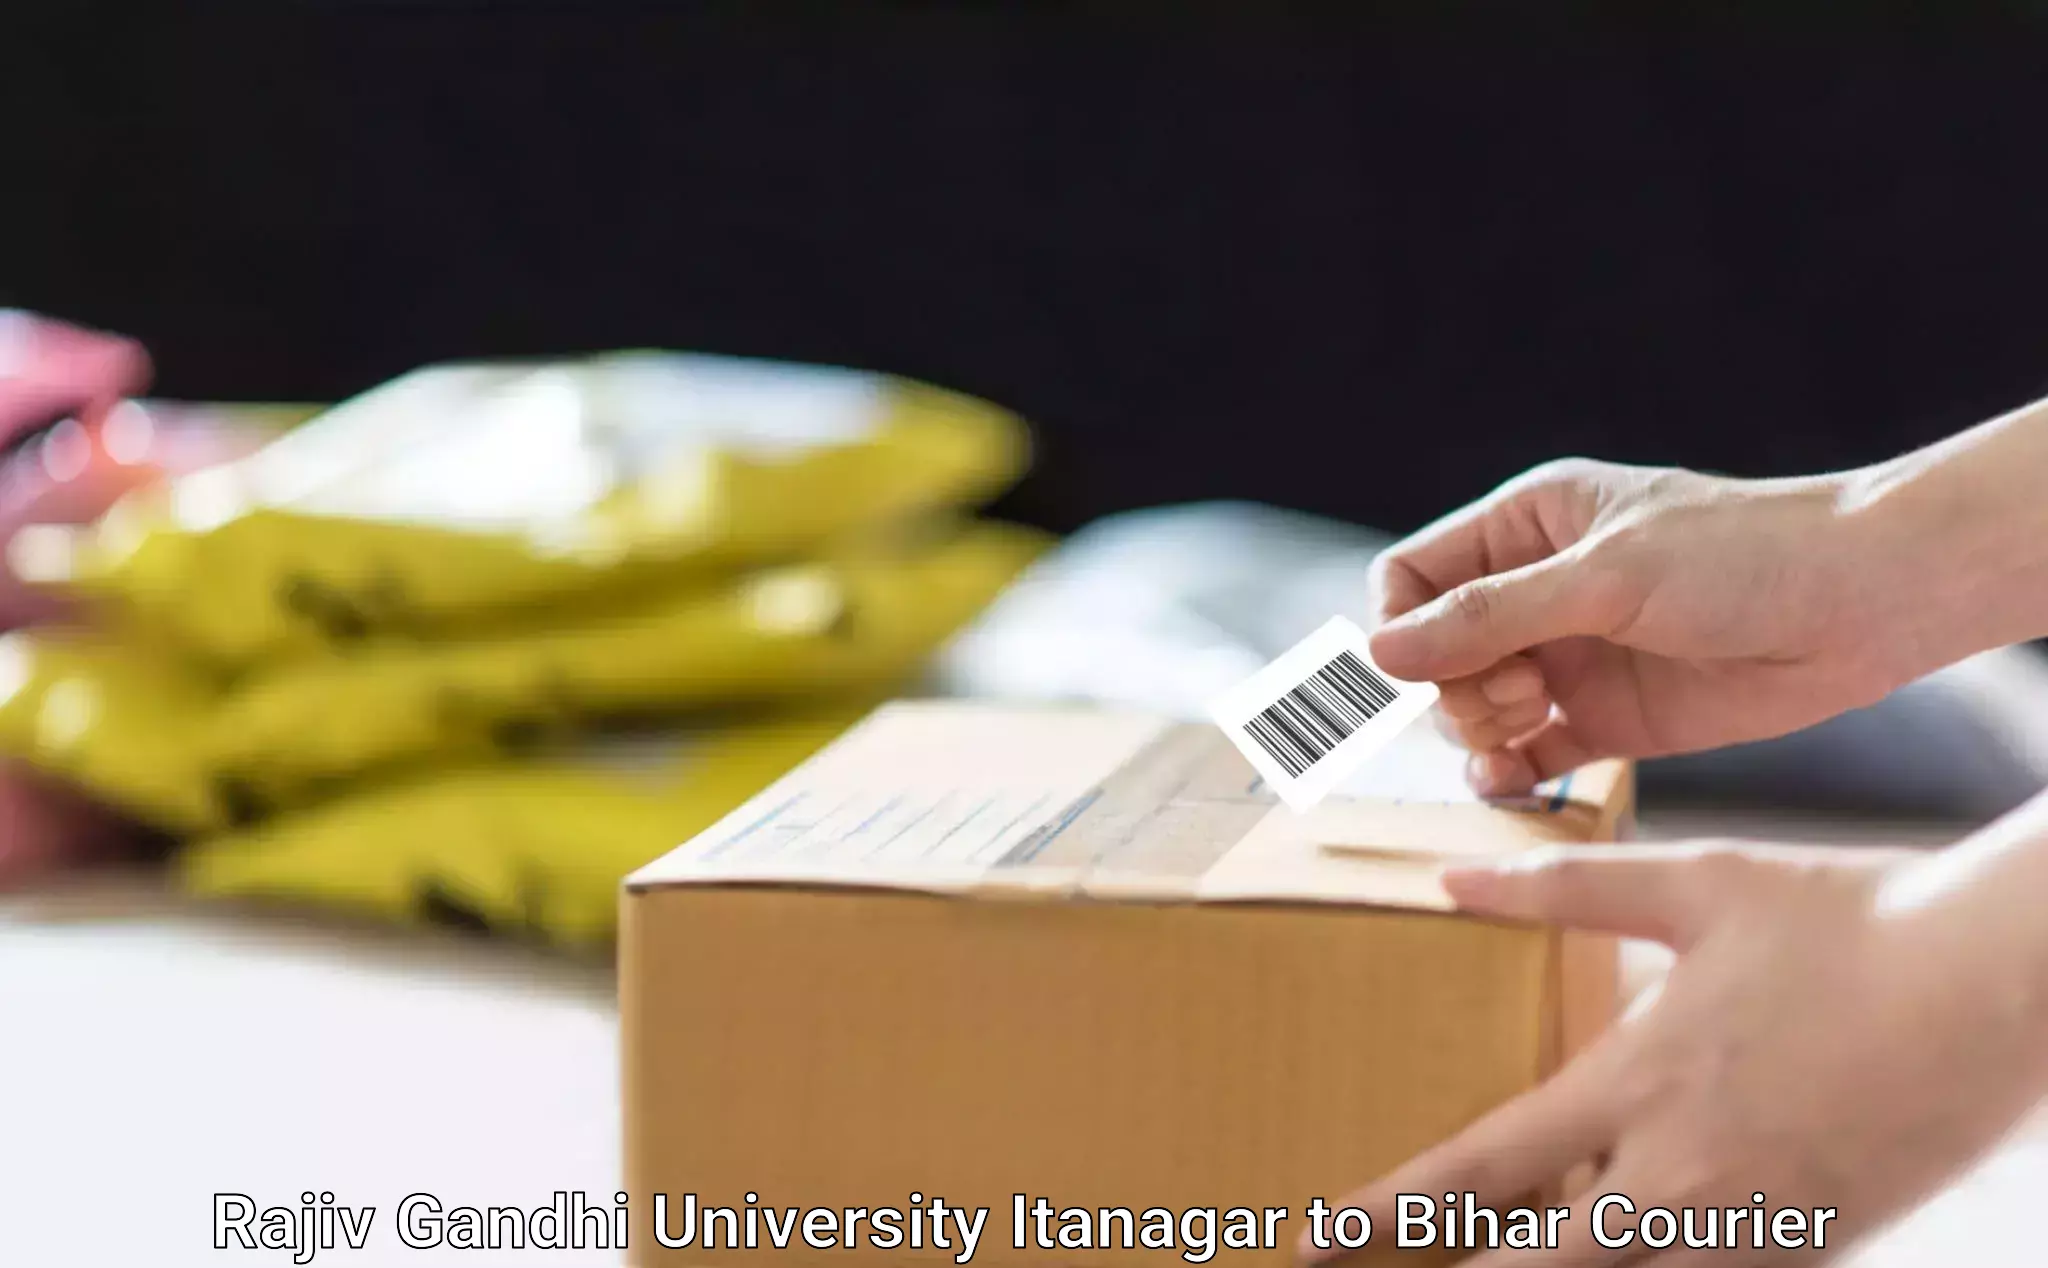 Large package courier Rajiv Gandhi University Itanagar to Bihar